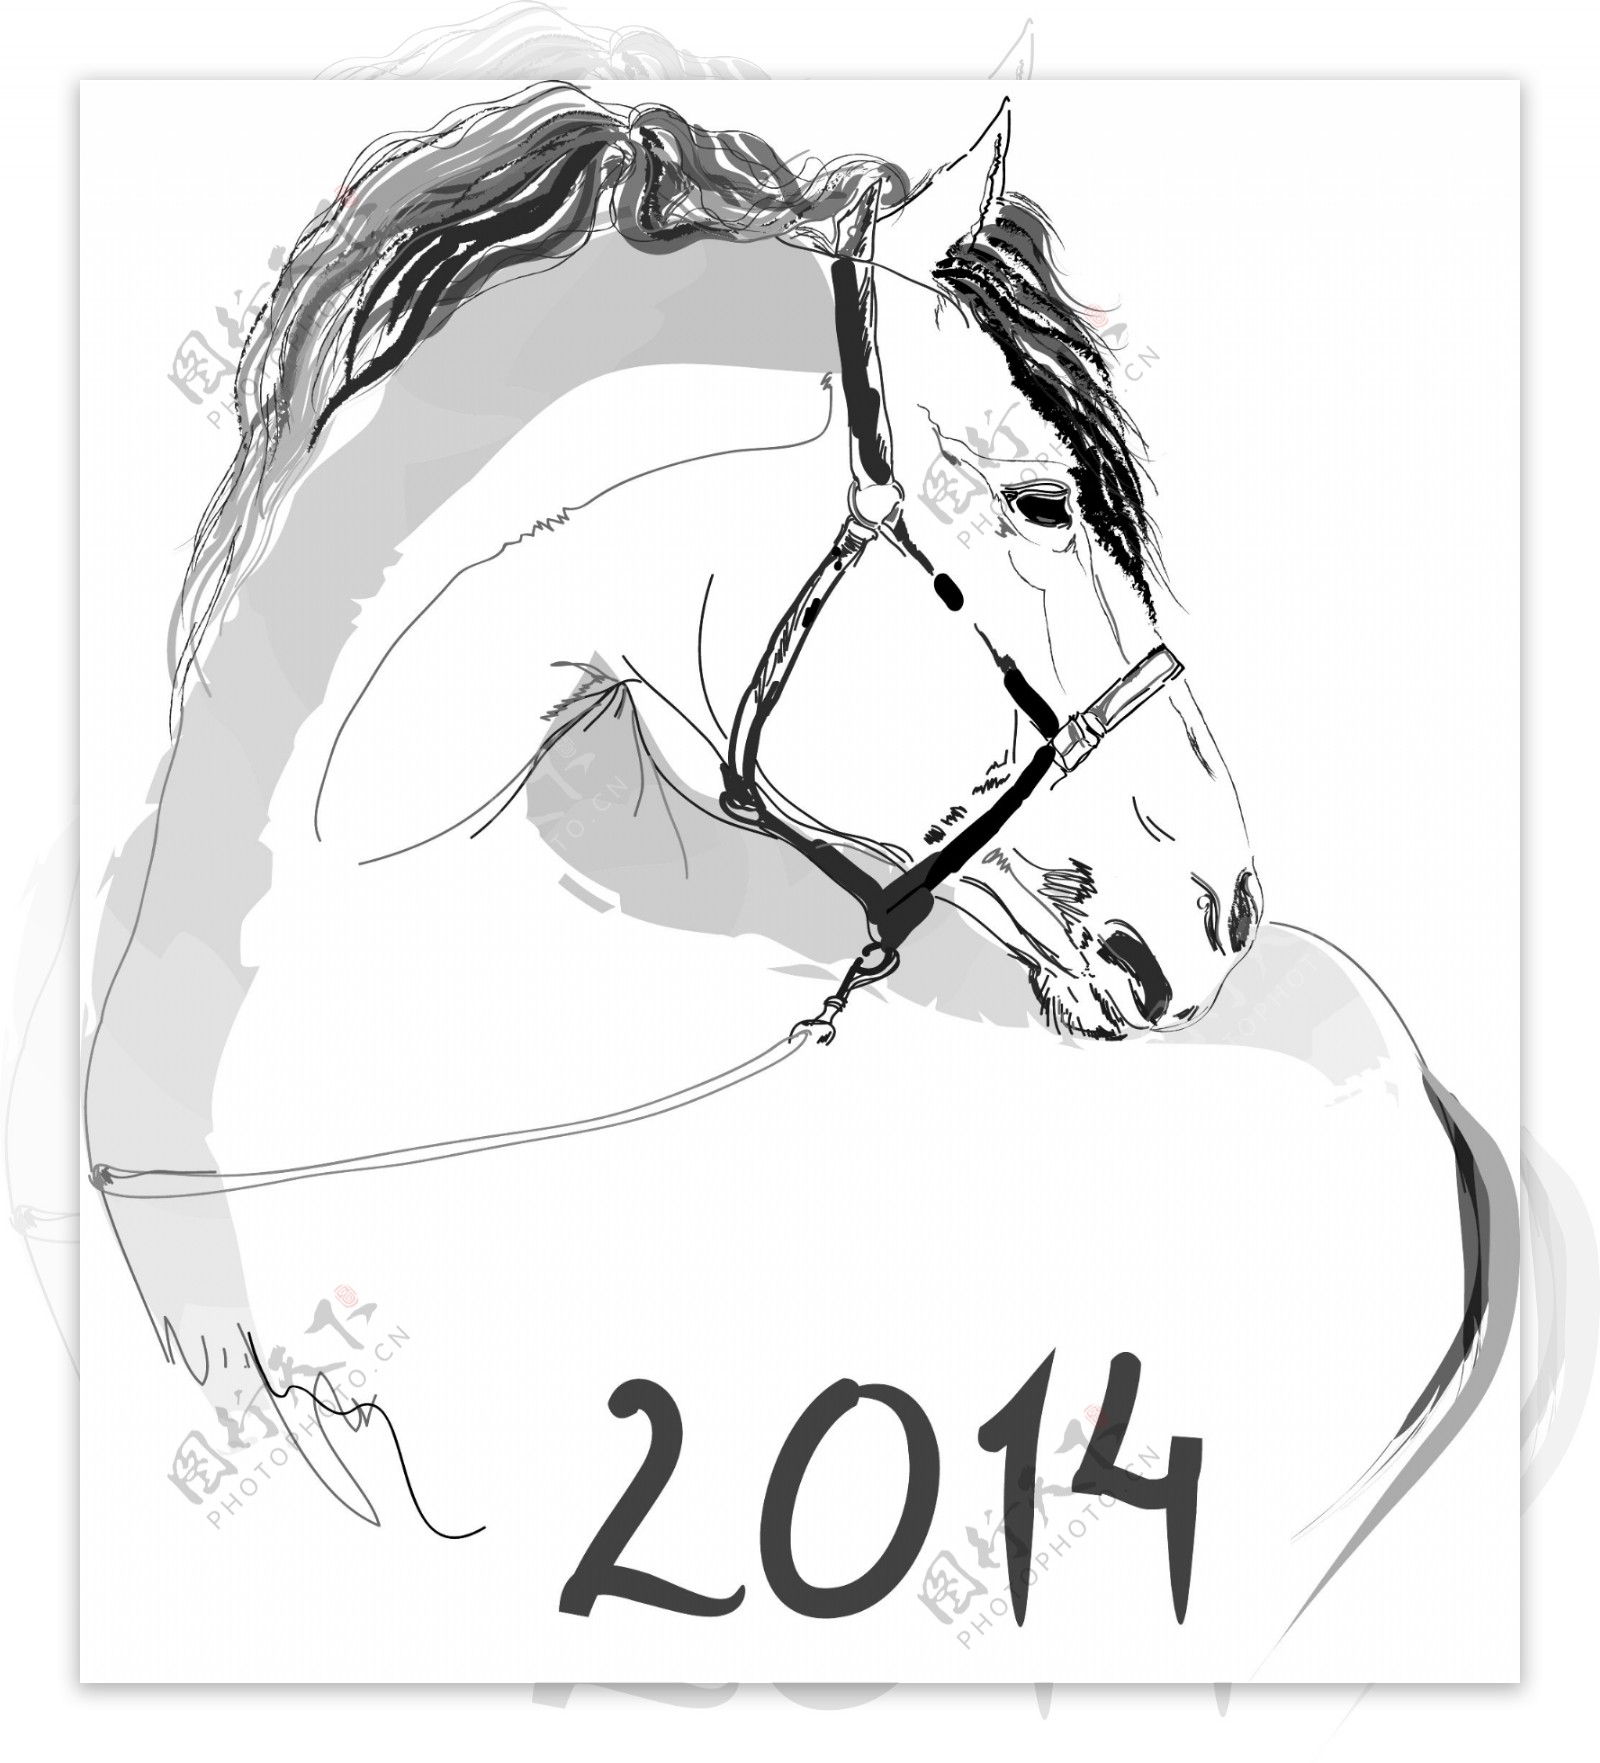 创意2014匹马的矢量图形01